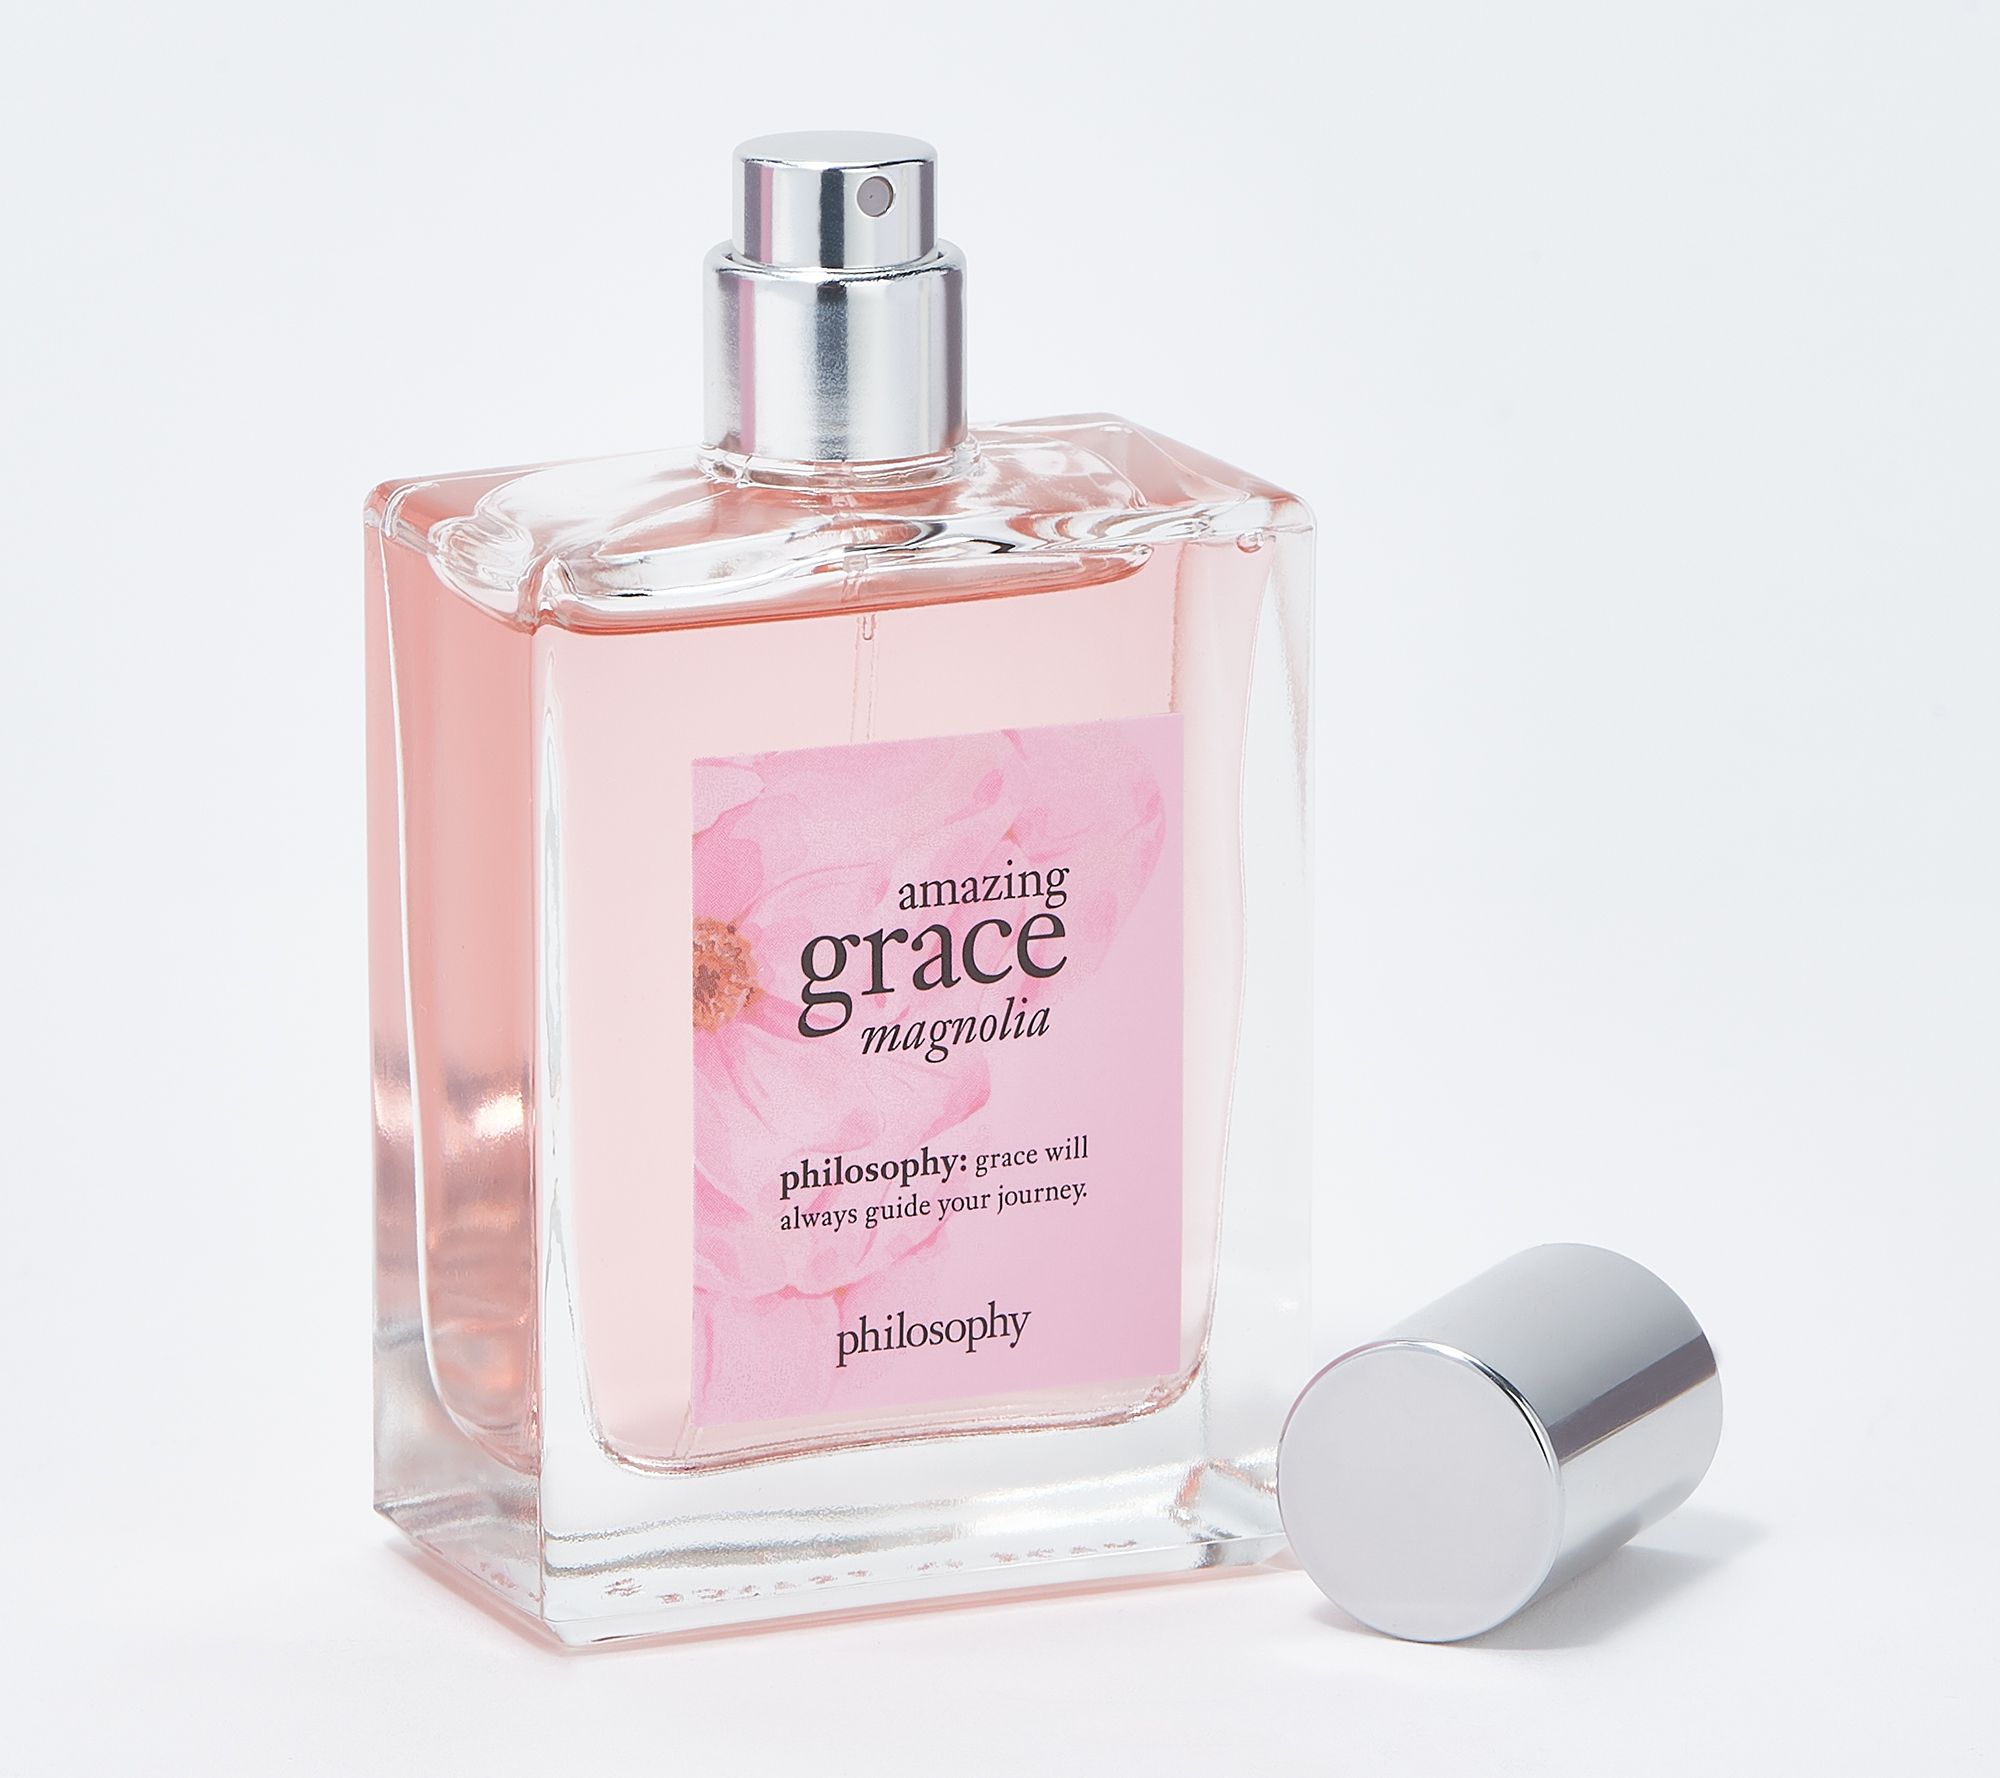 philosophy amazing grace magnolia fragrance layering kit